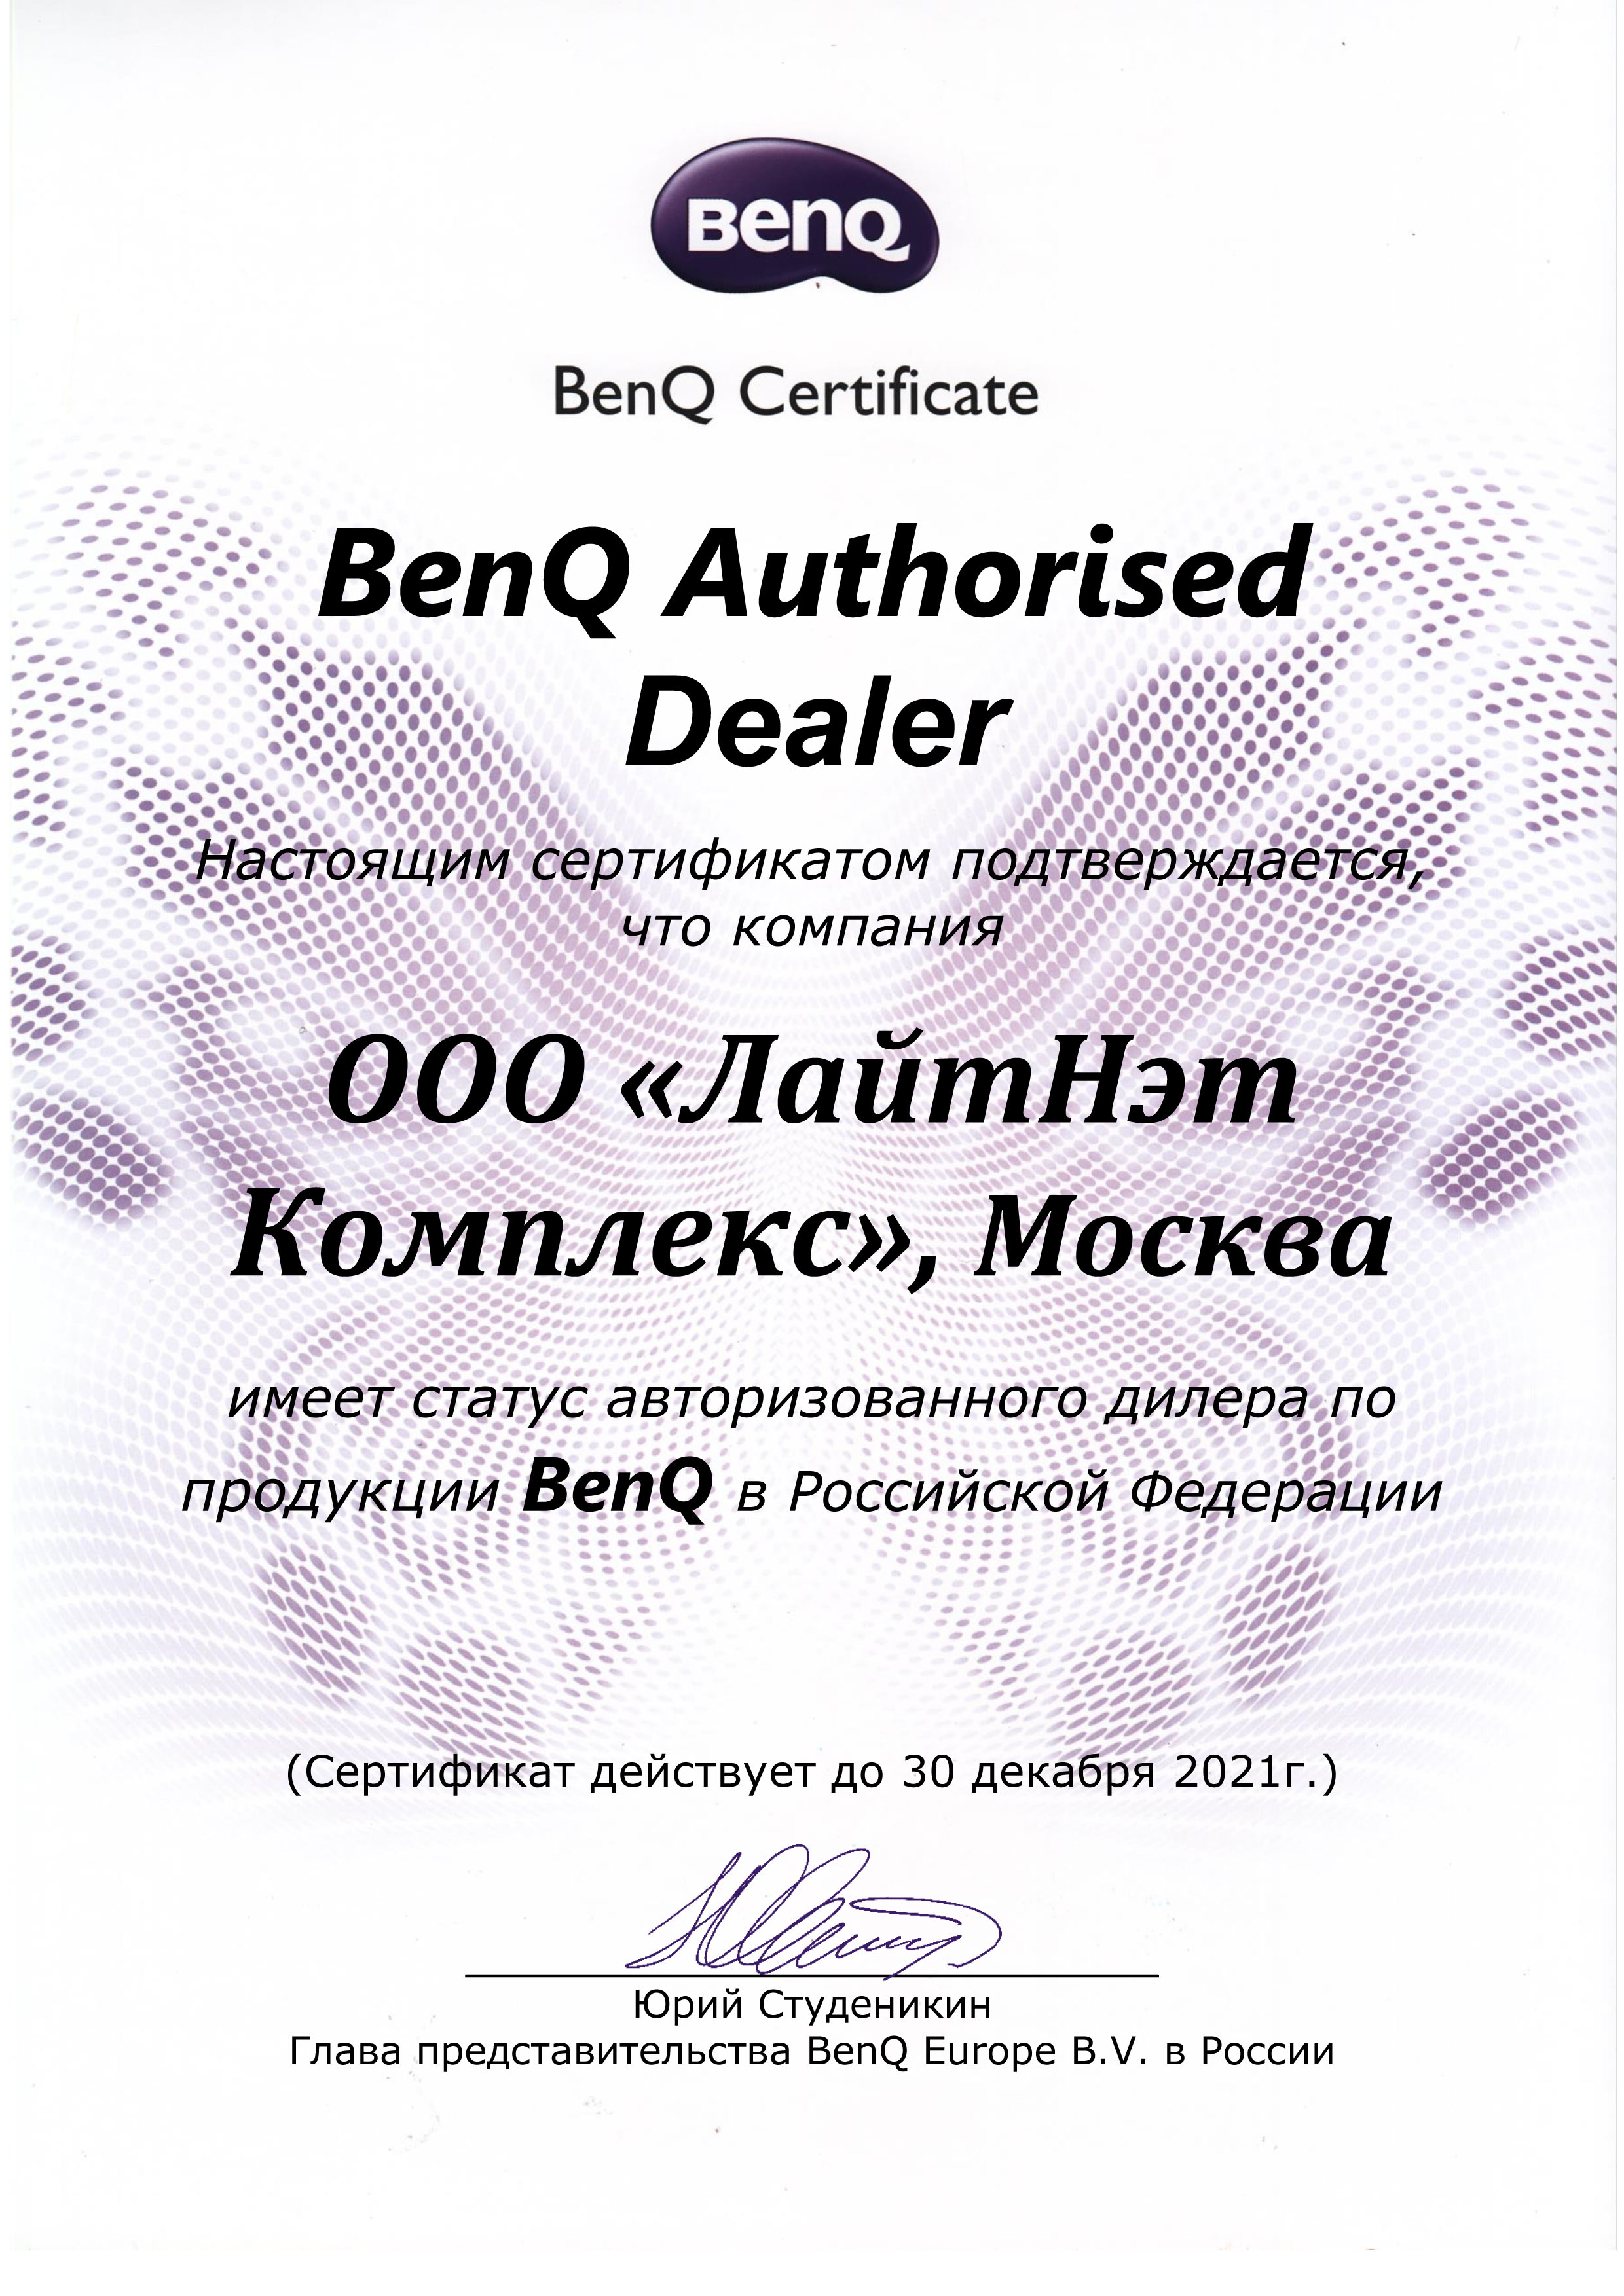 BenQ - Авторизованный дилер